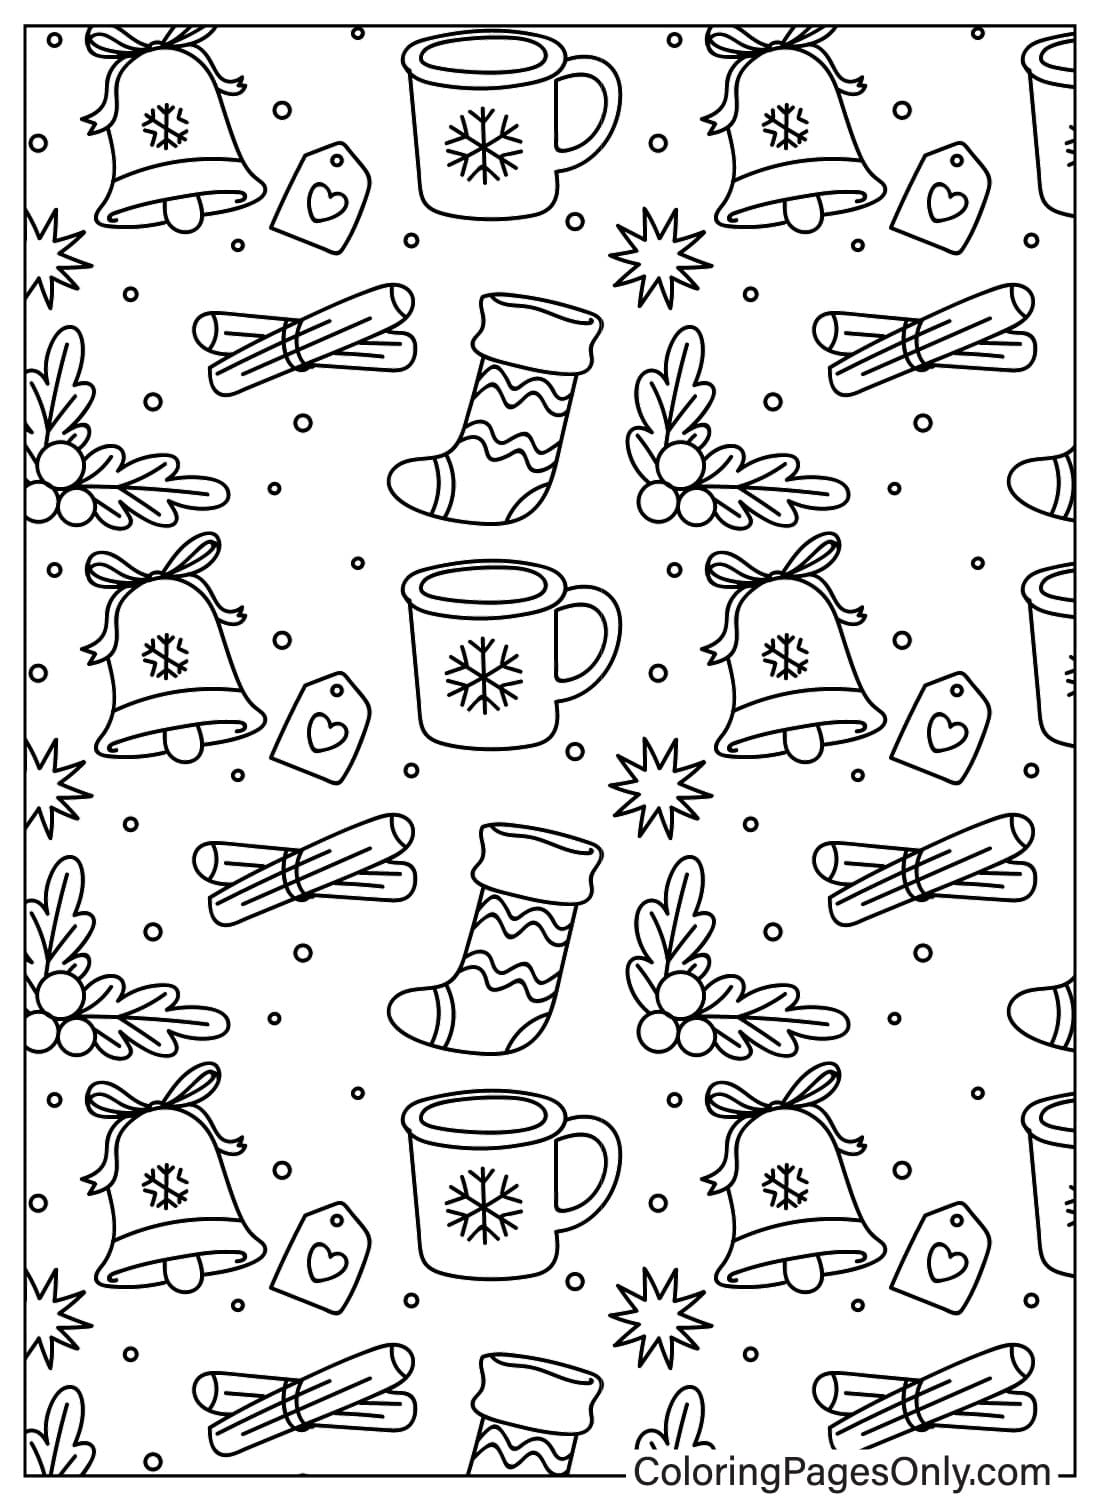 Página para colorear de patrones navideños PDF de Patrón navideño